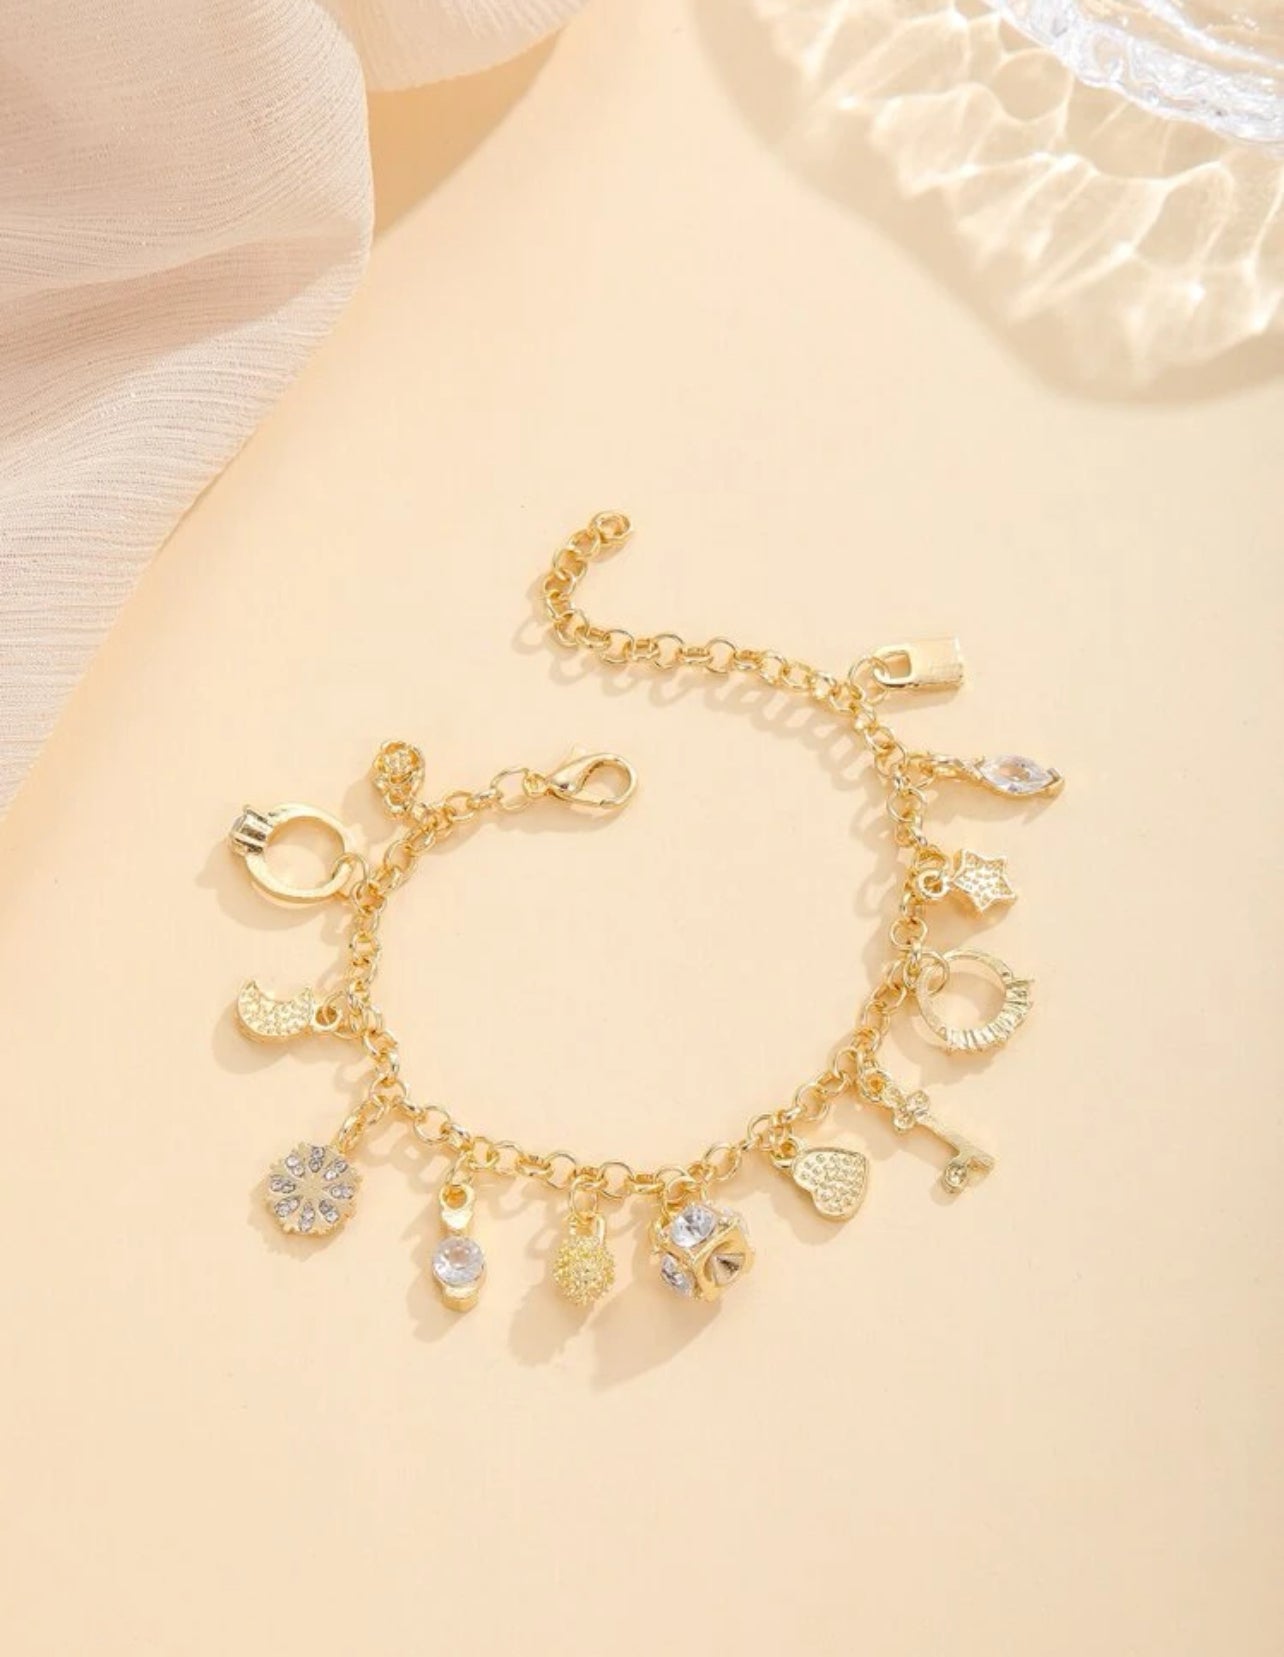 1pc Elegant Style Star Heart Key Pendant Bracelet Charm 18k Gold Plated Bracelet Chain